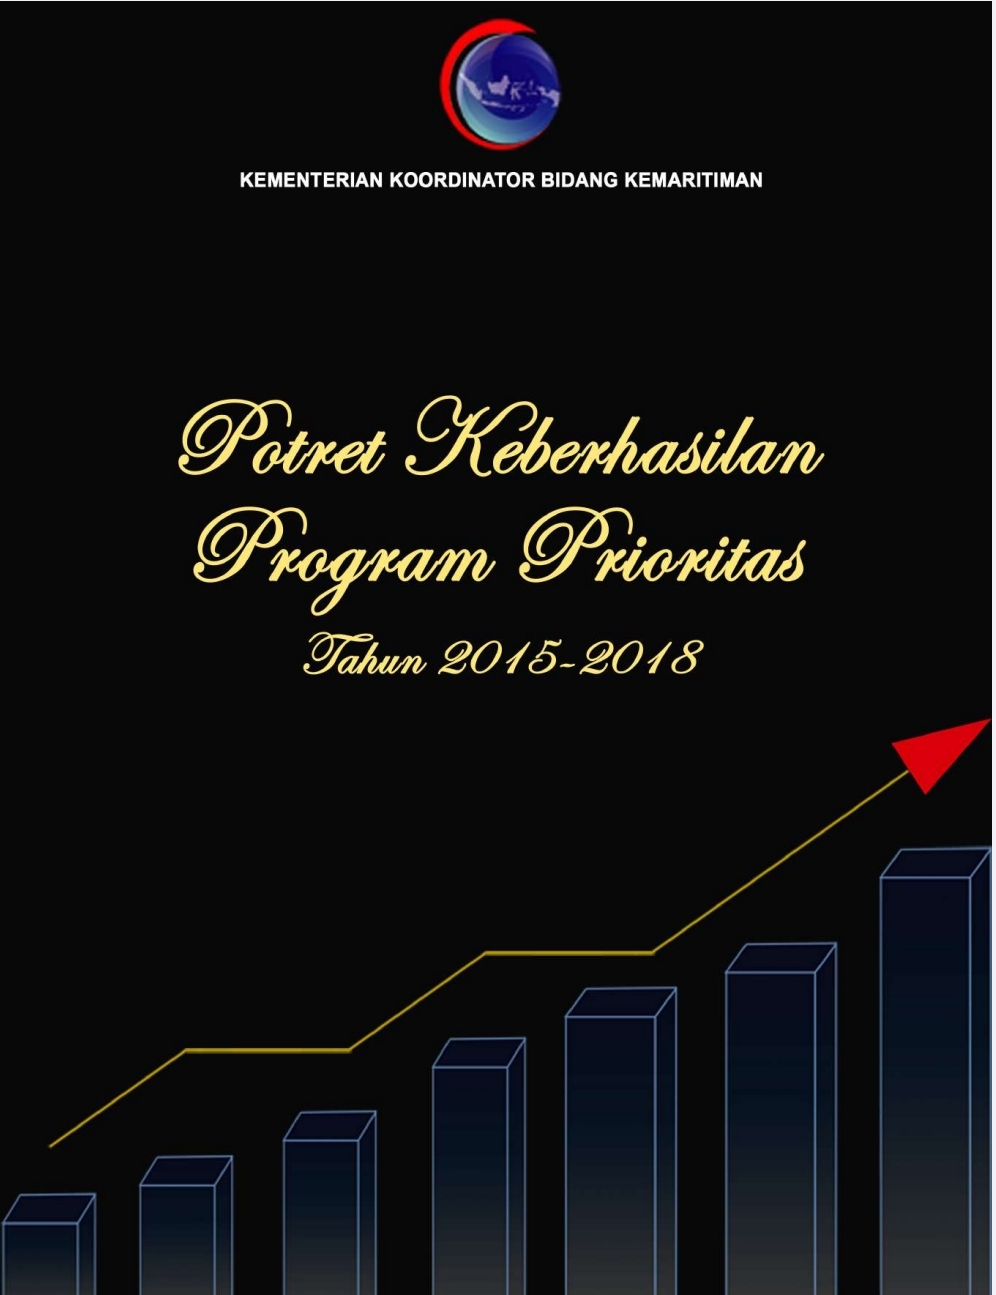 Potret Keberhasilan Program Prioritas Tahun 2015 - 2018